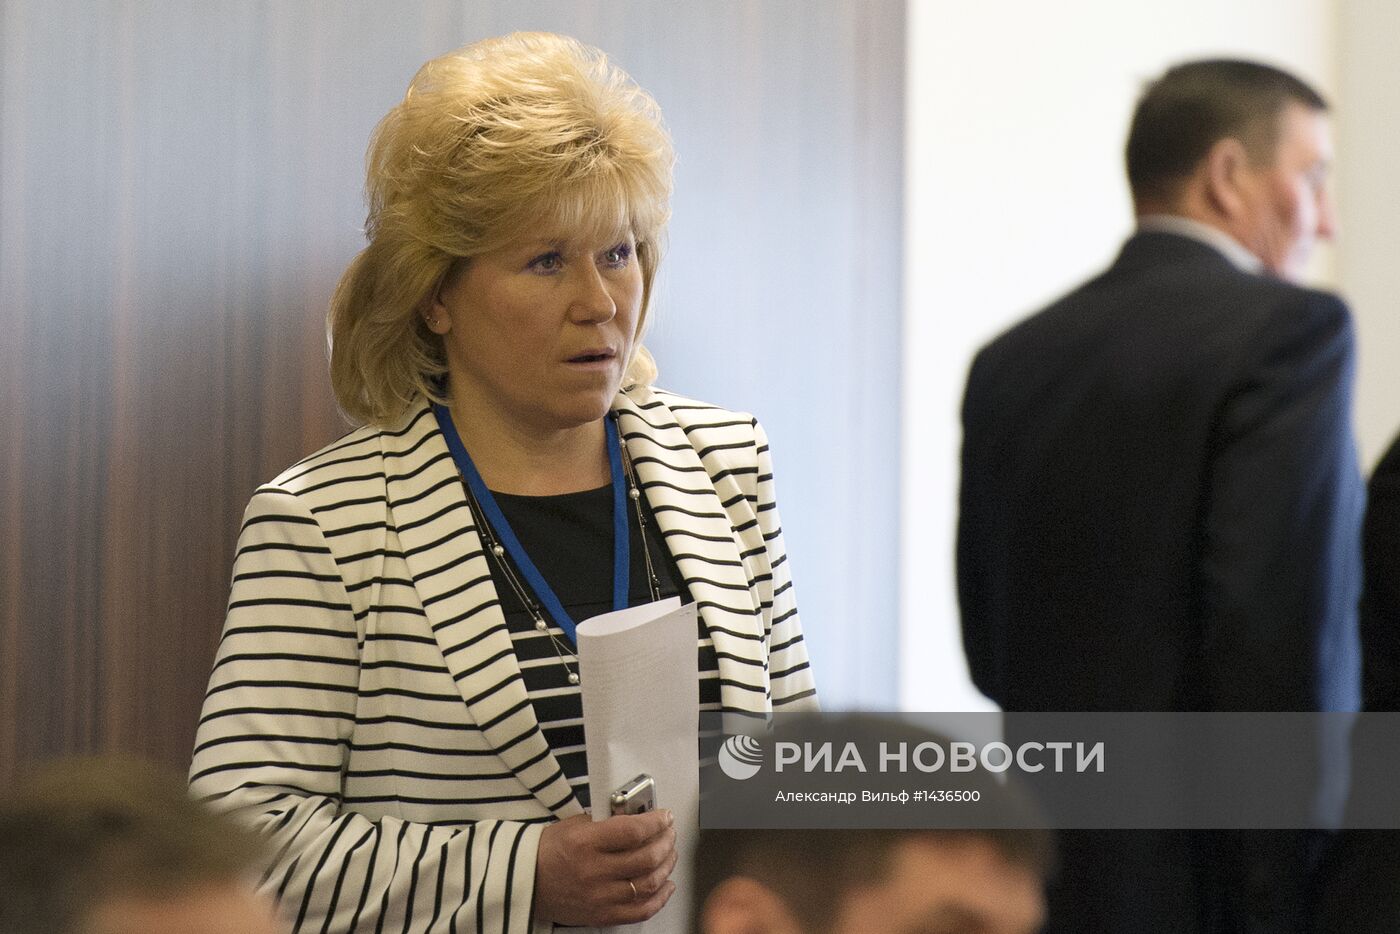 Отчетно-выборная конференция Союза биатлонистов России